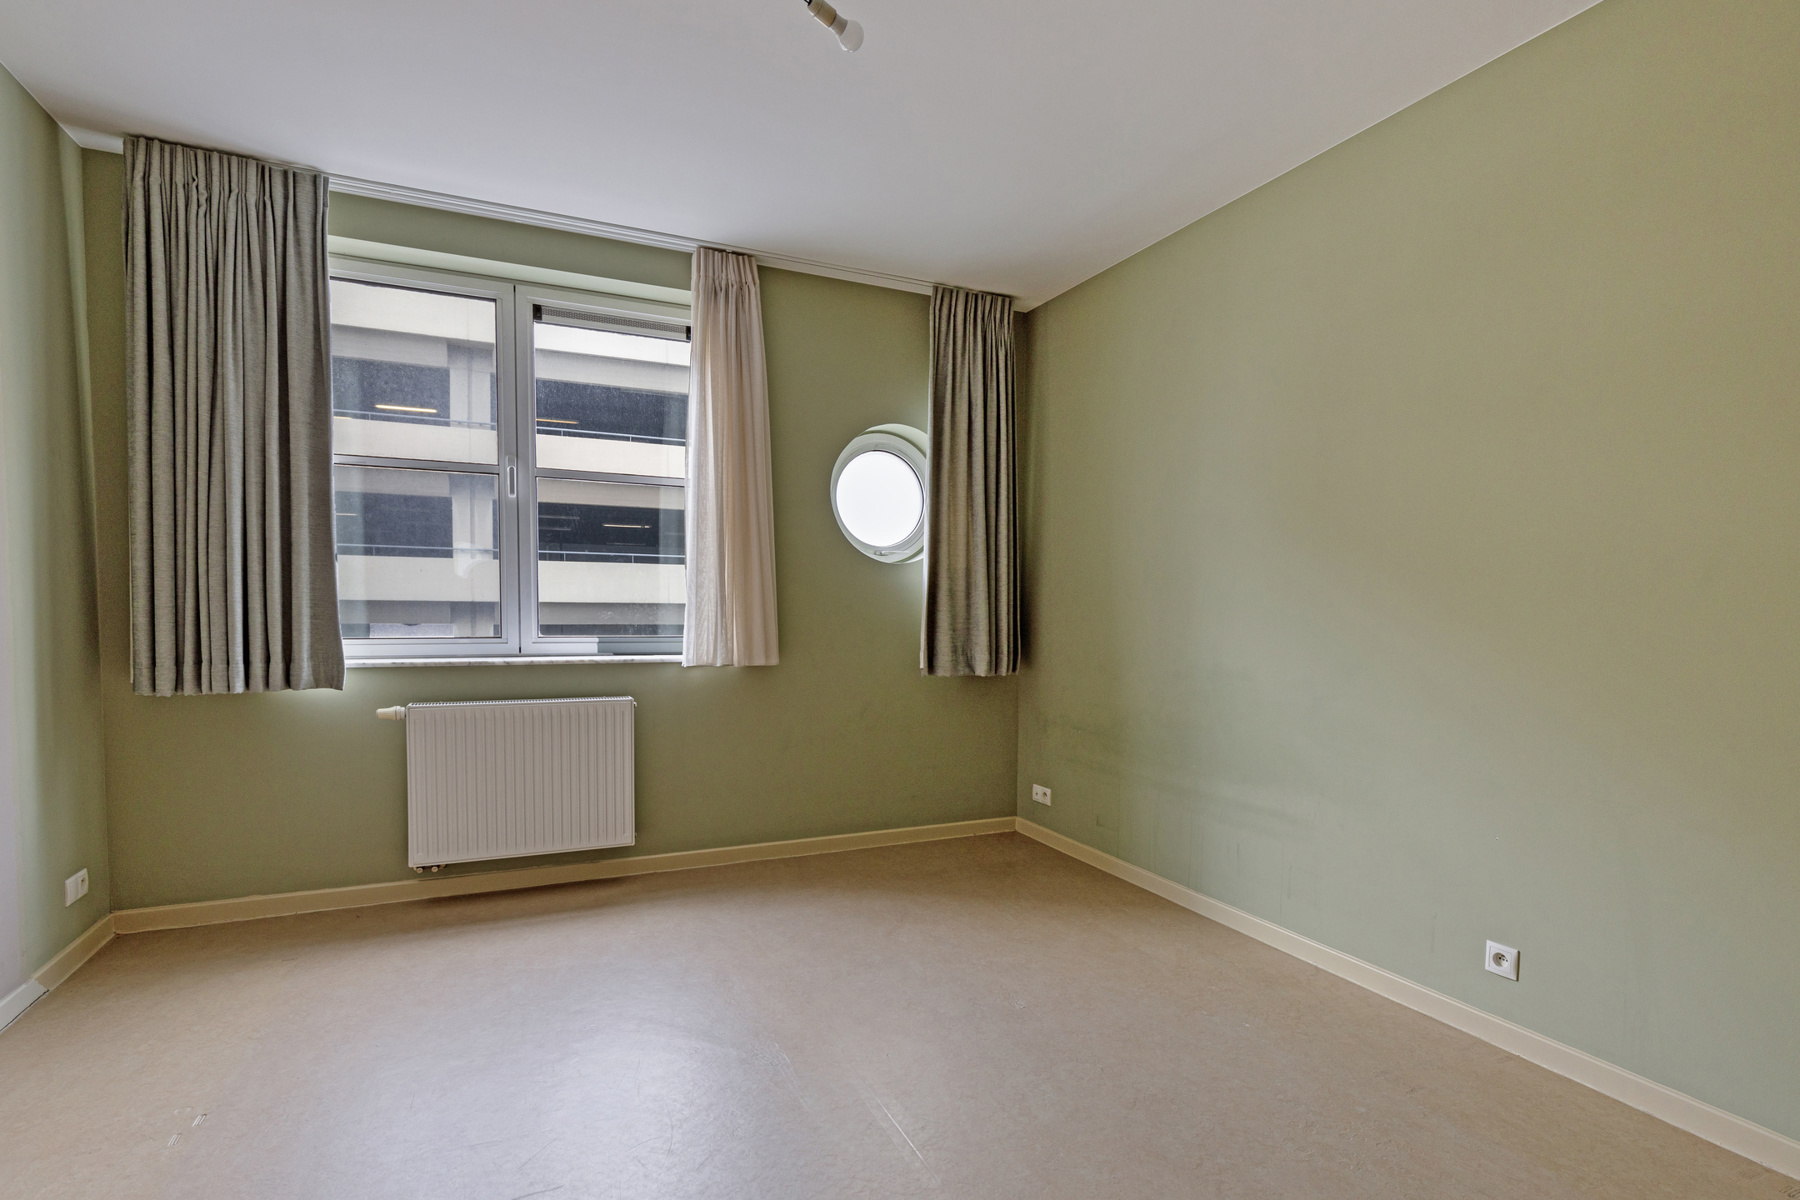 2 slaapkamer appartement met ruim terras in centrum Brussel foto 8